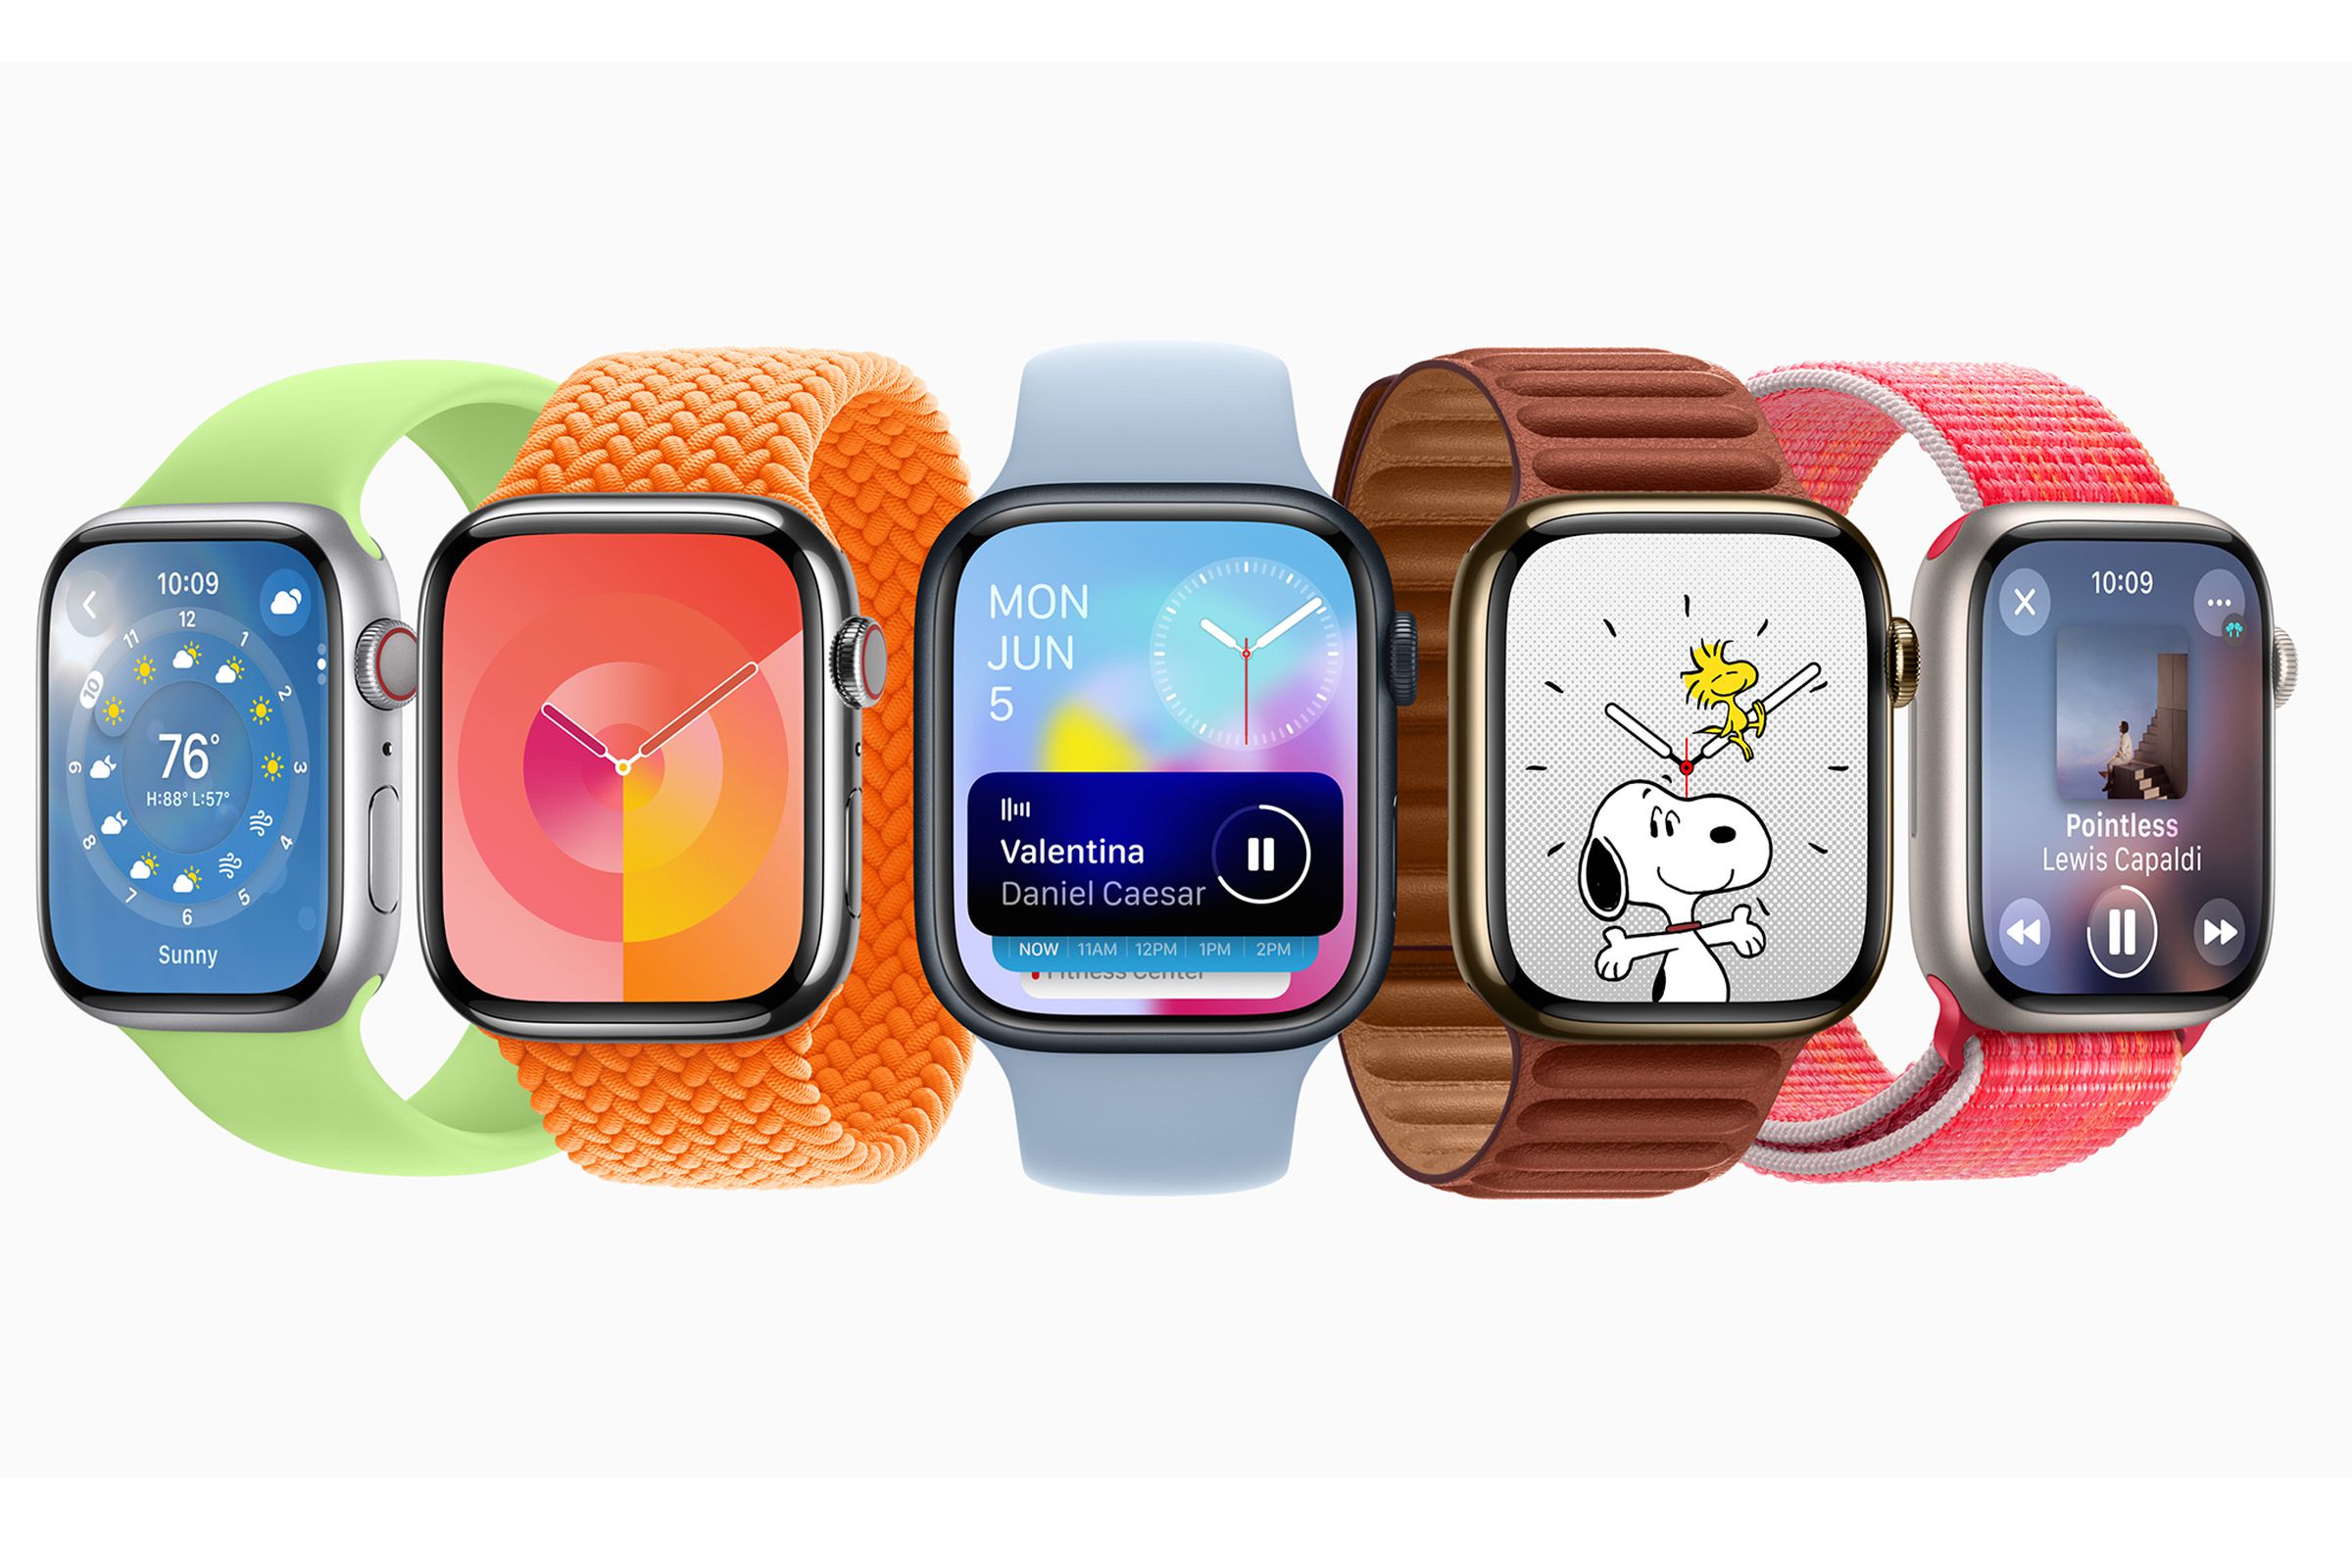 Render of Apple Watch showing various screens of watchOS 10